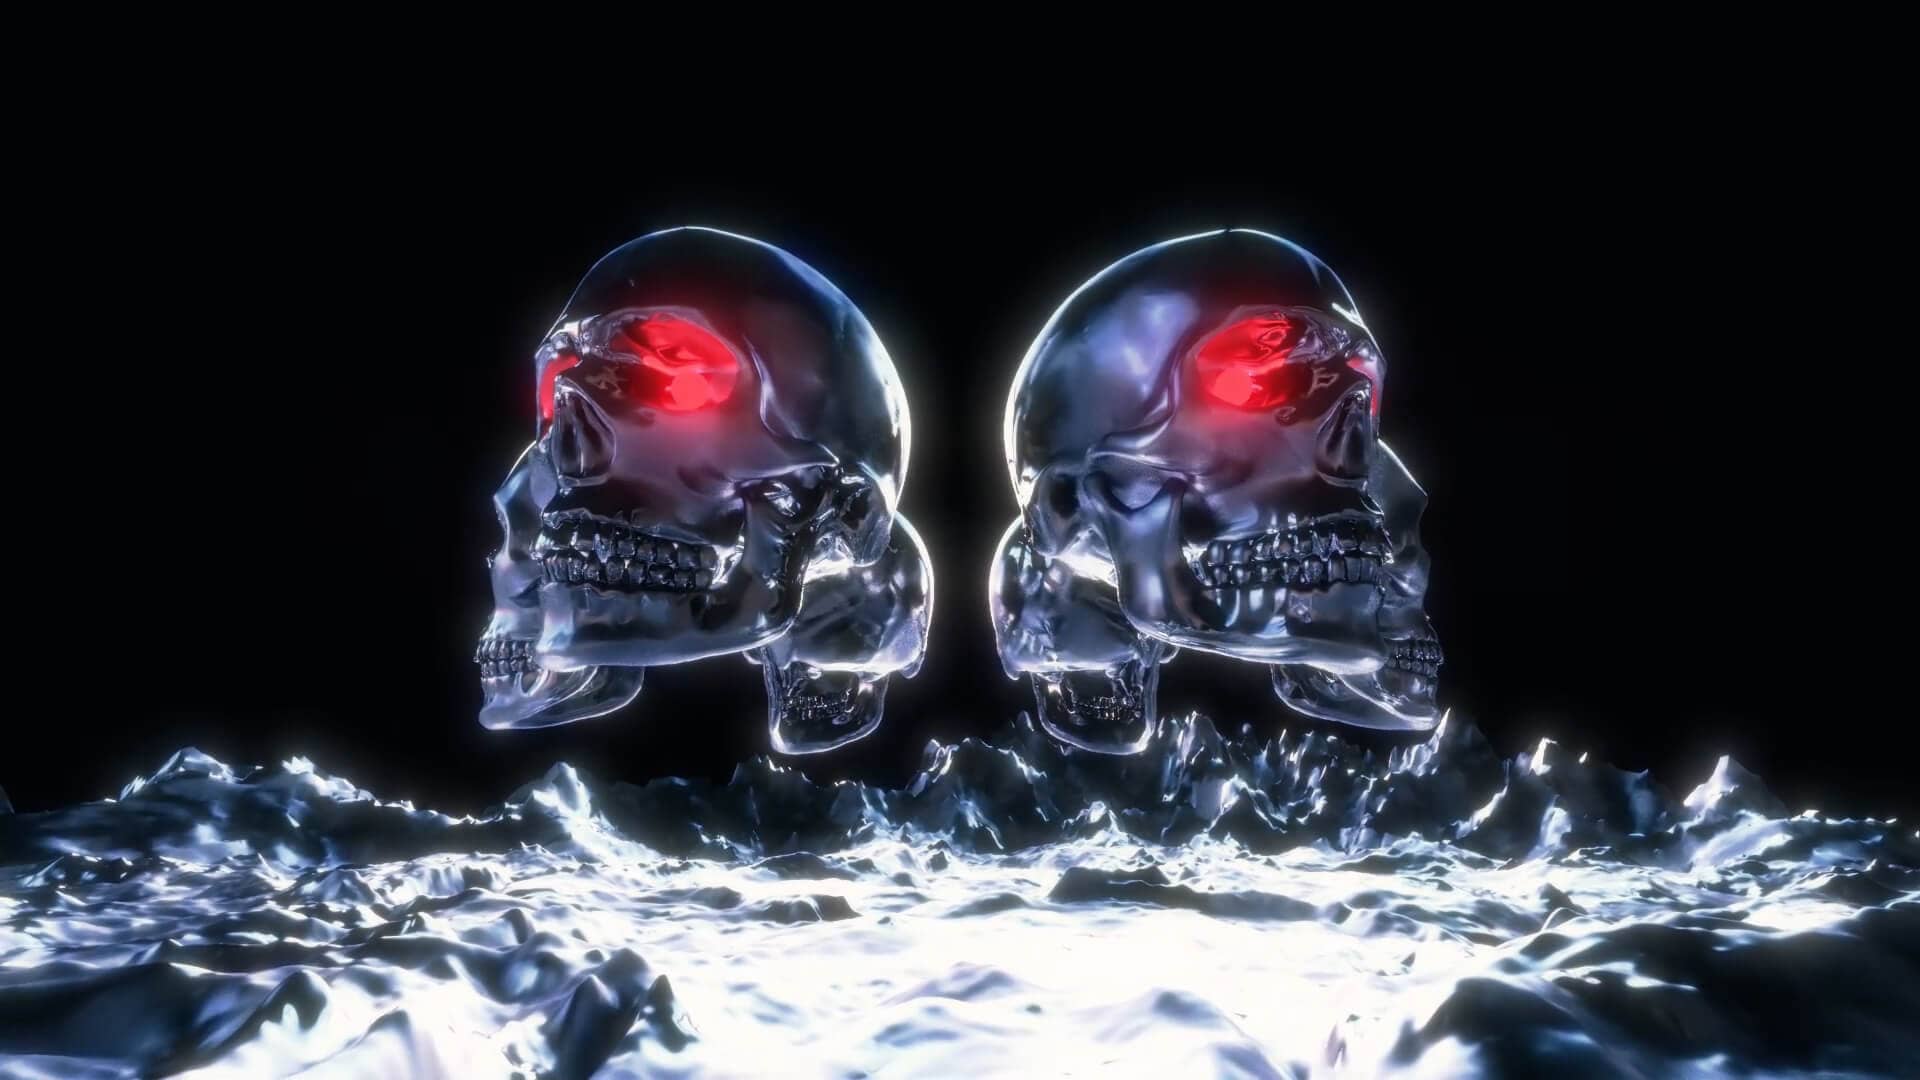 Terror Skulls VJ Loop visual de calaveras que incluye hasta 6 clips diferenciados